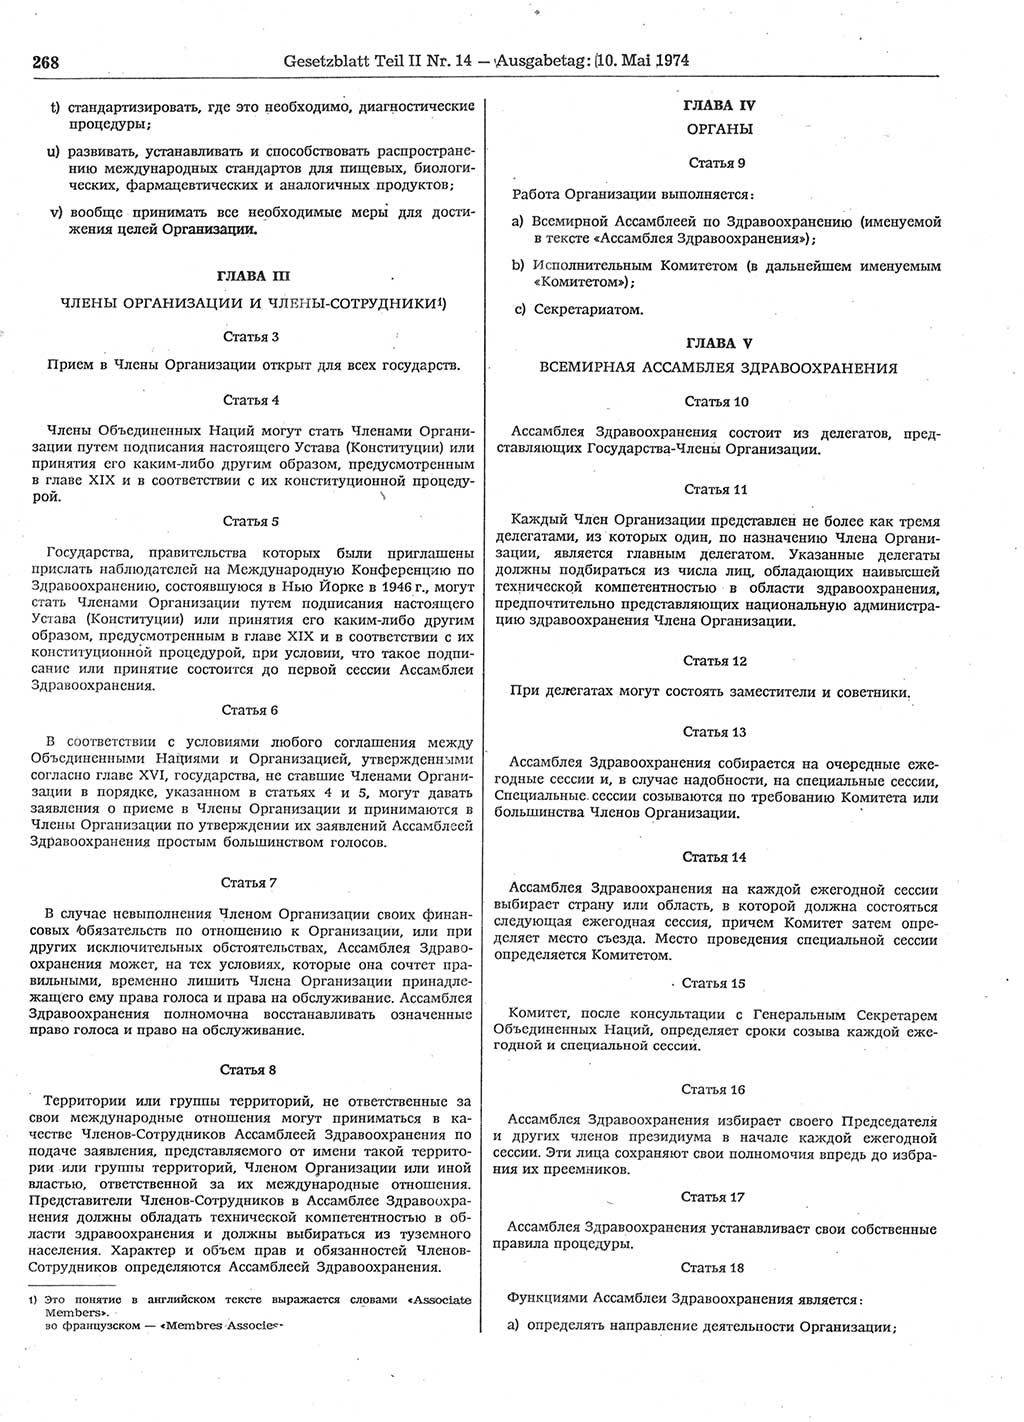 Gesetzblatt (GBl.) der Deutschen Demokratischen Republik (DDR) Teil ⅠⅠ 1974, Seite 268 (GBl. DDR ⅠⅠ 1974, S. 268)